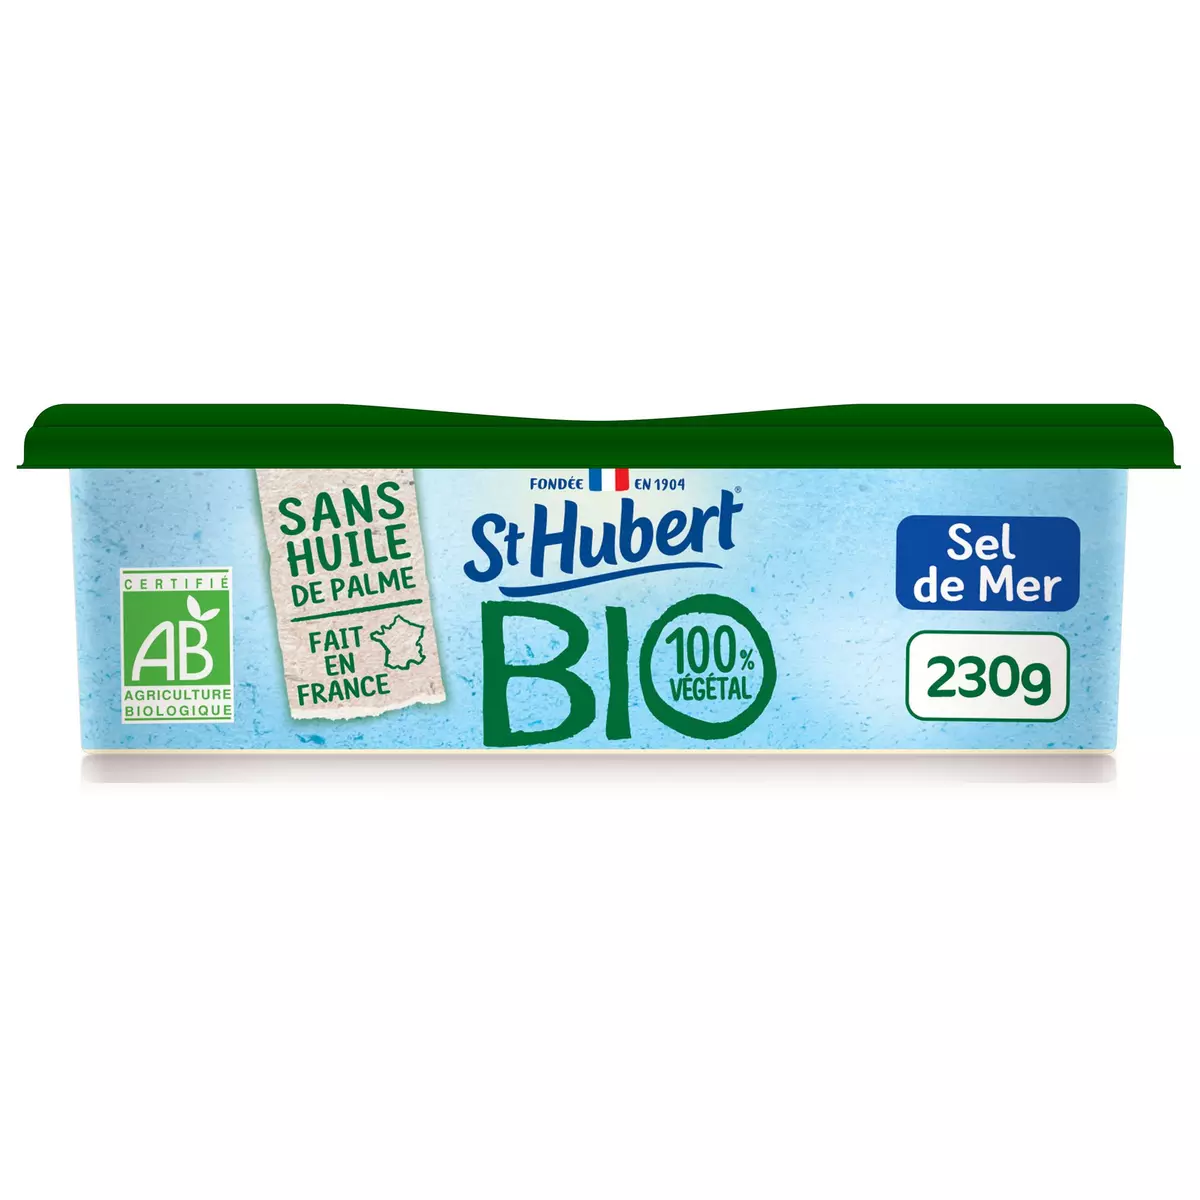 ST HUBERT St Hubert BIO® est fabriqué en France, à partir de matières premières agricoles biologiques d'origine végétale. Sa recette est sans huile de palme et convient aux végétariens et aux végétaliens. De plus, l’emballage, composé de 70% de carton, est recyclable.  230g